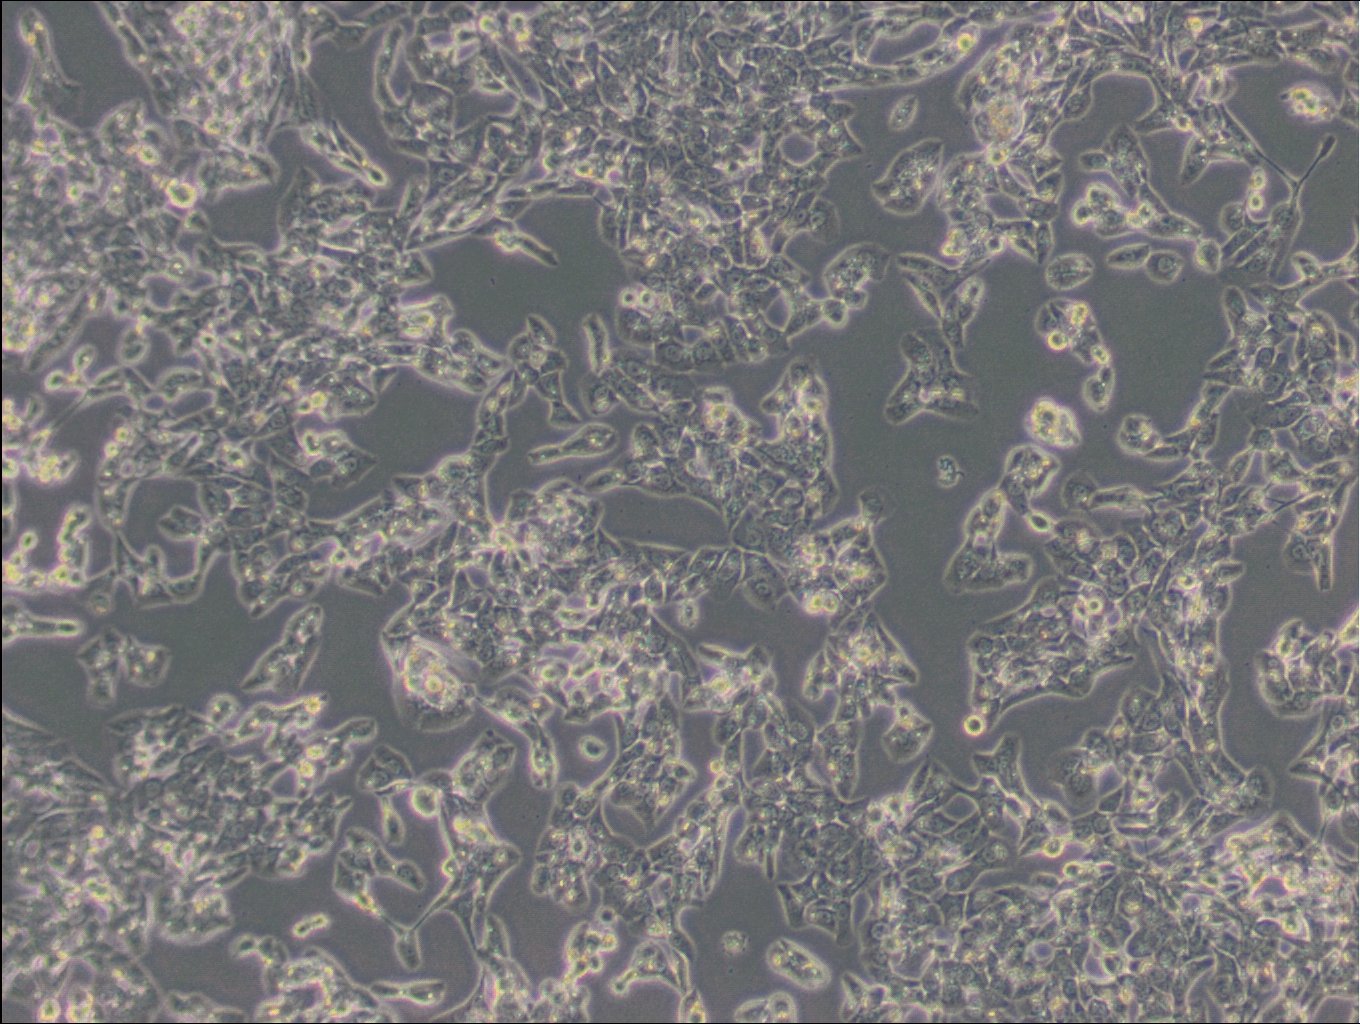 MLTC-1 Cells